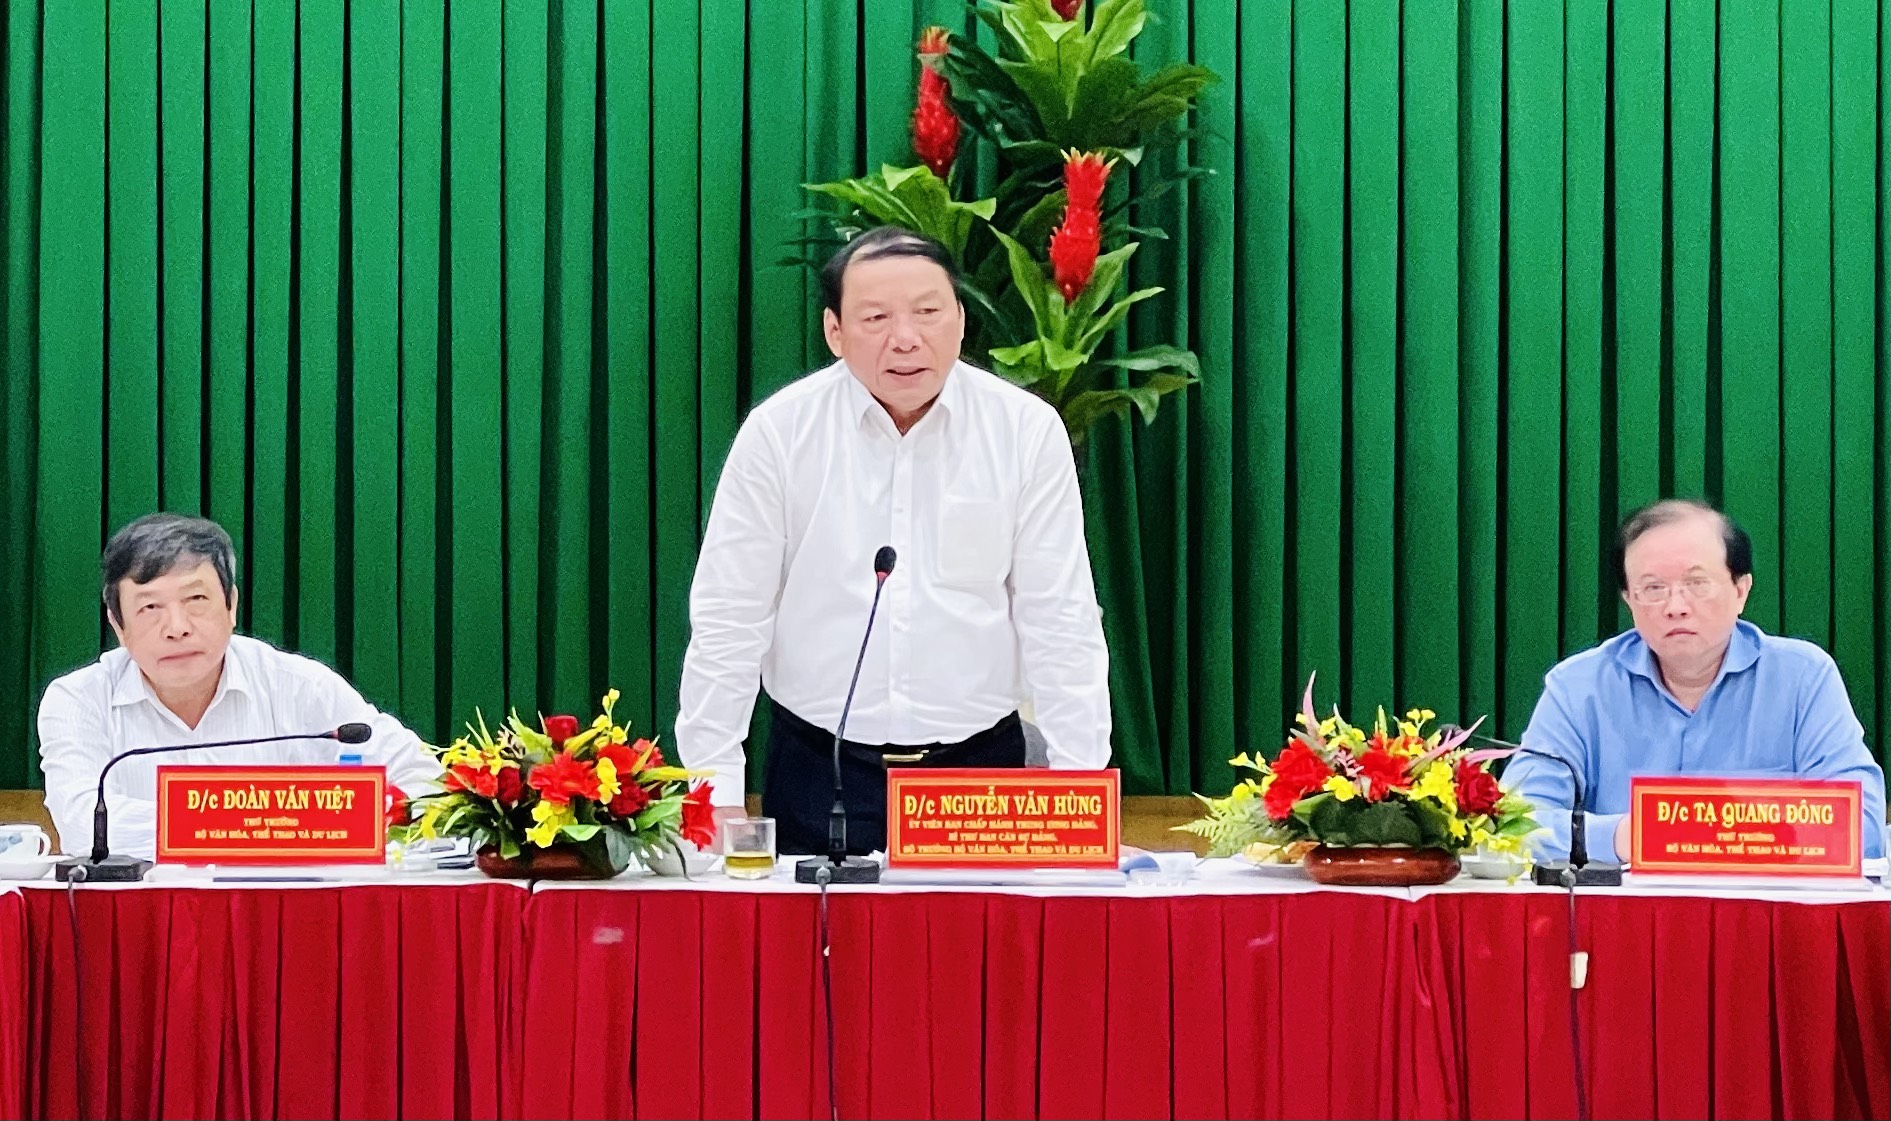 Bộ trưởng Nguyễn Văn Hùng thăm và làm việc với các đơn vị thuộc Bộ tại TP.HCM - Ảnh 1.